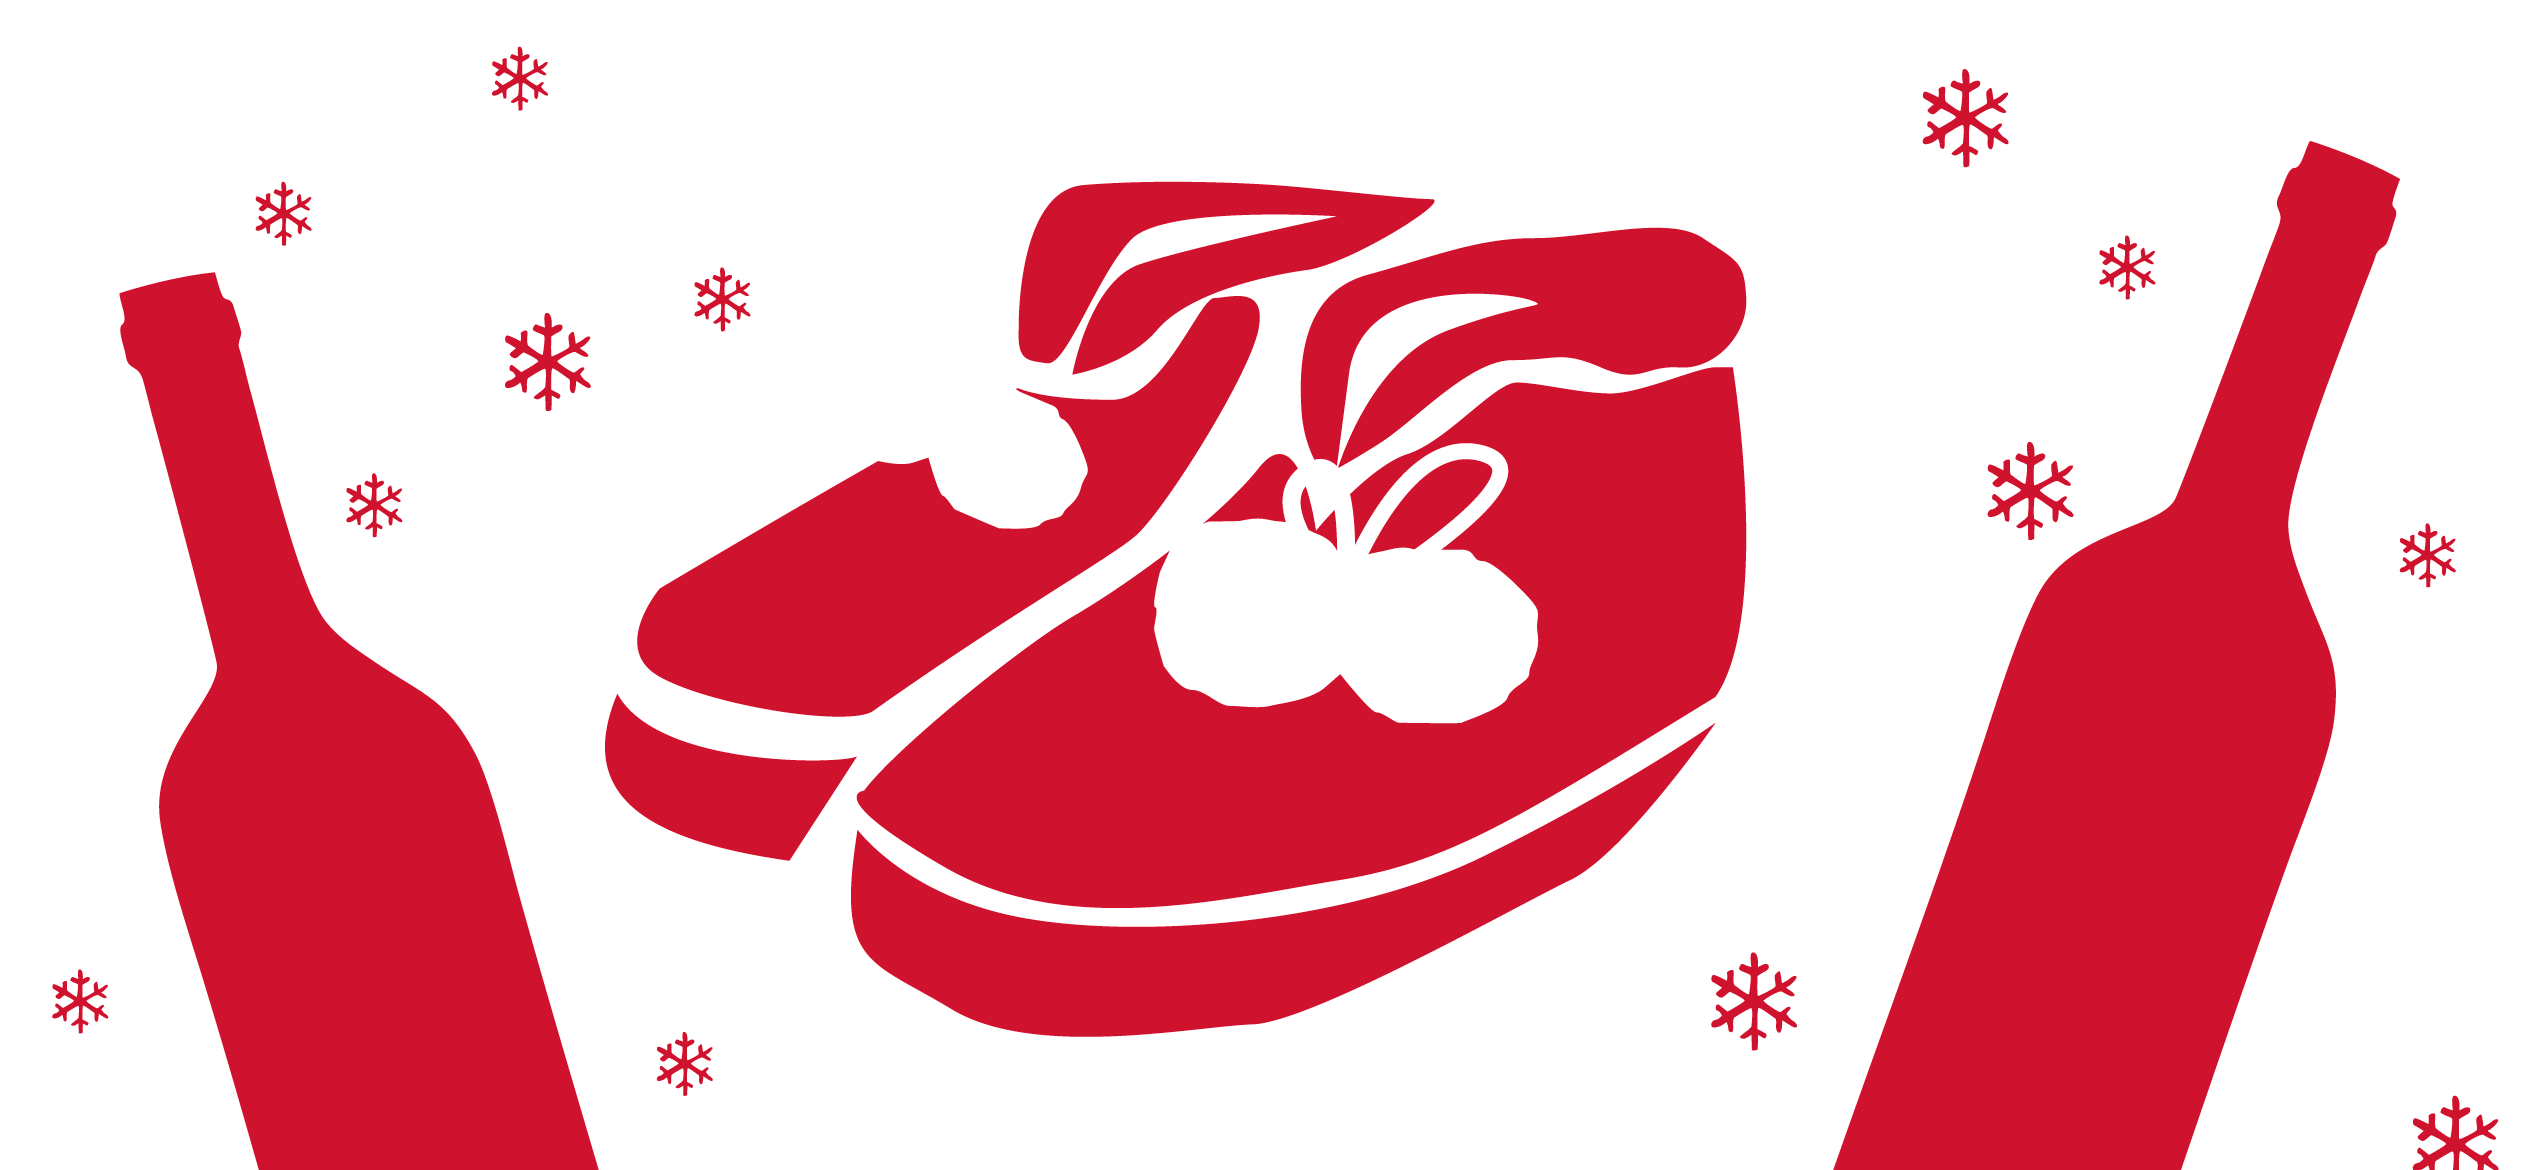 Logo en rouge sur fond blanc représentant des chaussons de Noel et des flocons de neiges